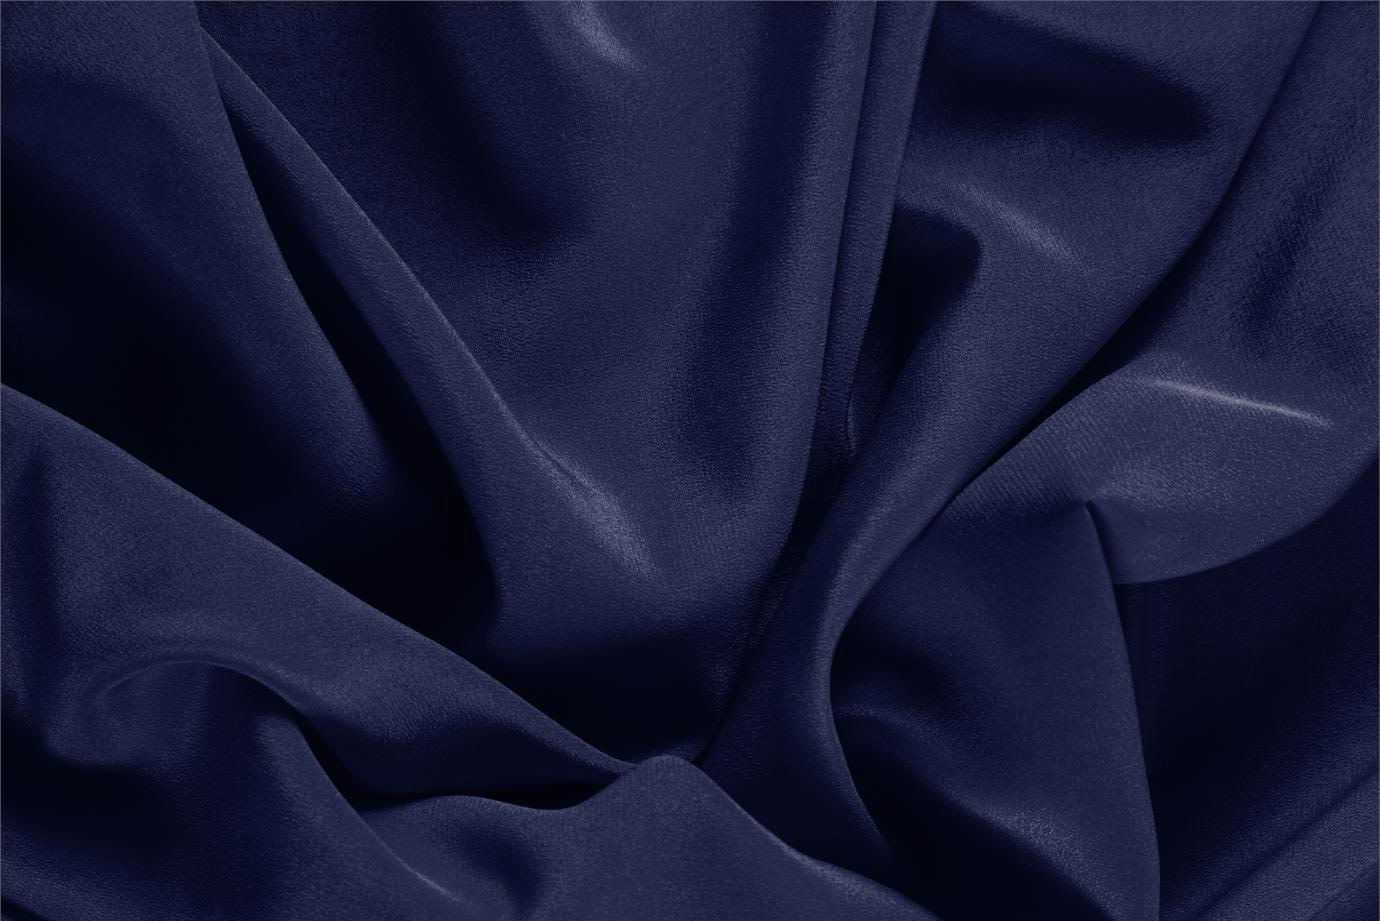 Tissu Crêpe de Chine Bleu marine en Soie pour vêtements